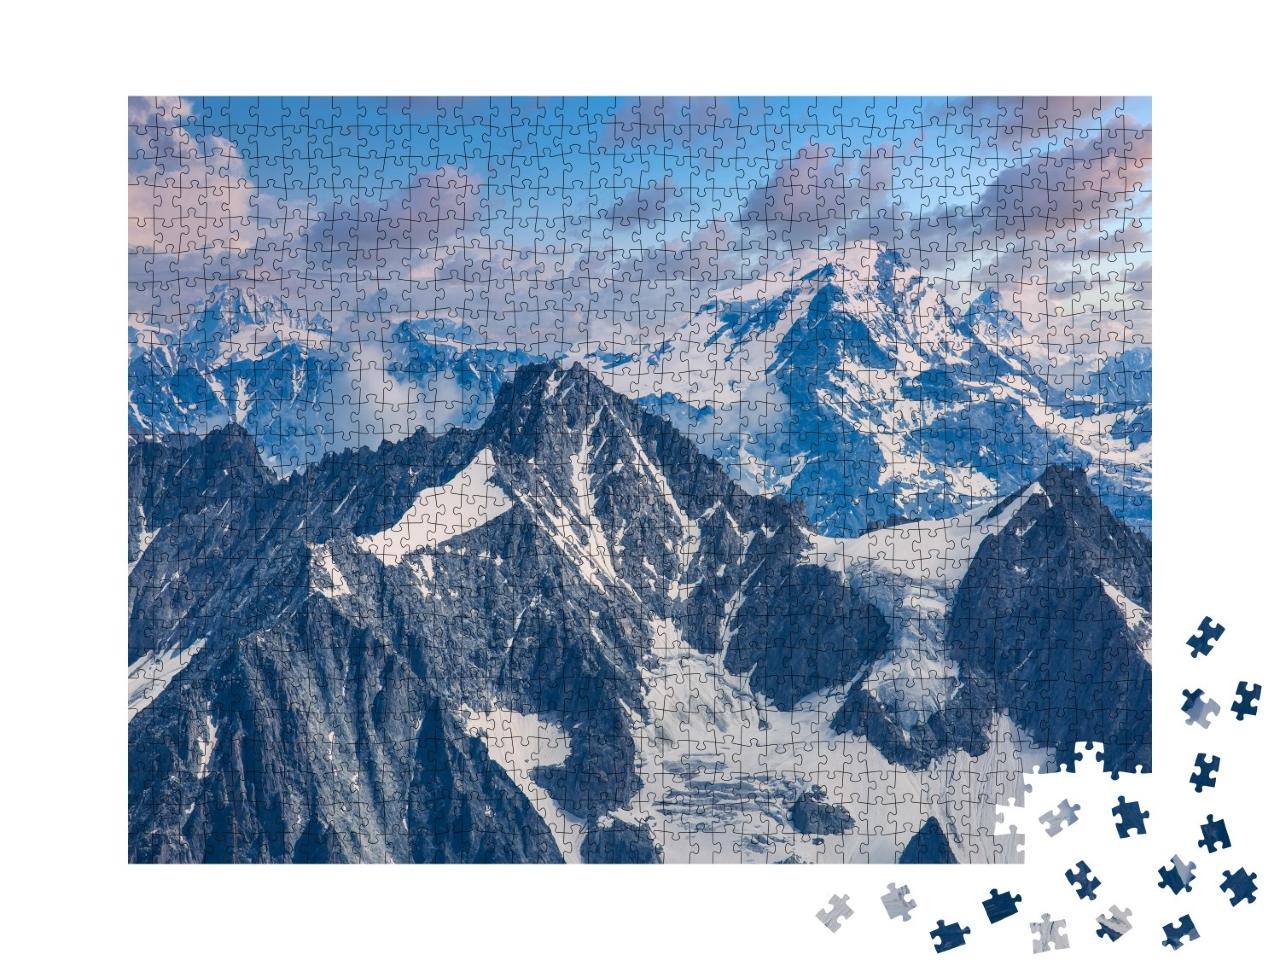 Puzzle de 1000 pièces « Alpes françaises sous le Mont Blanc »